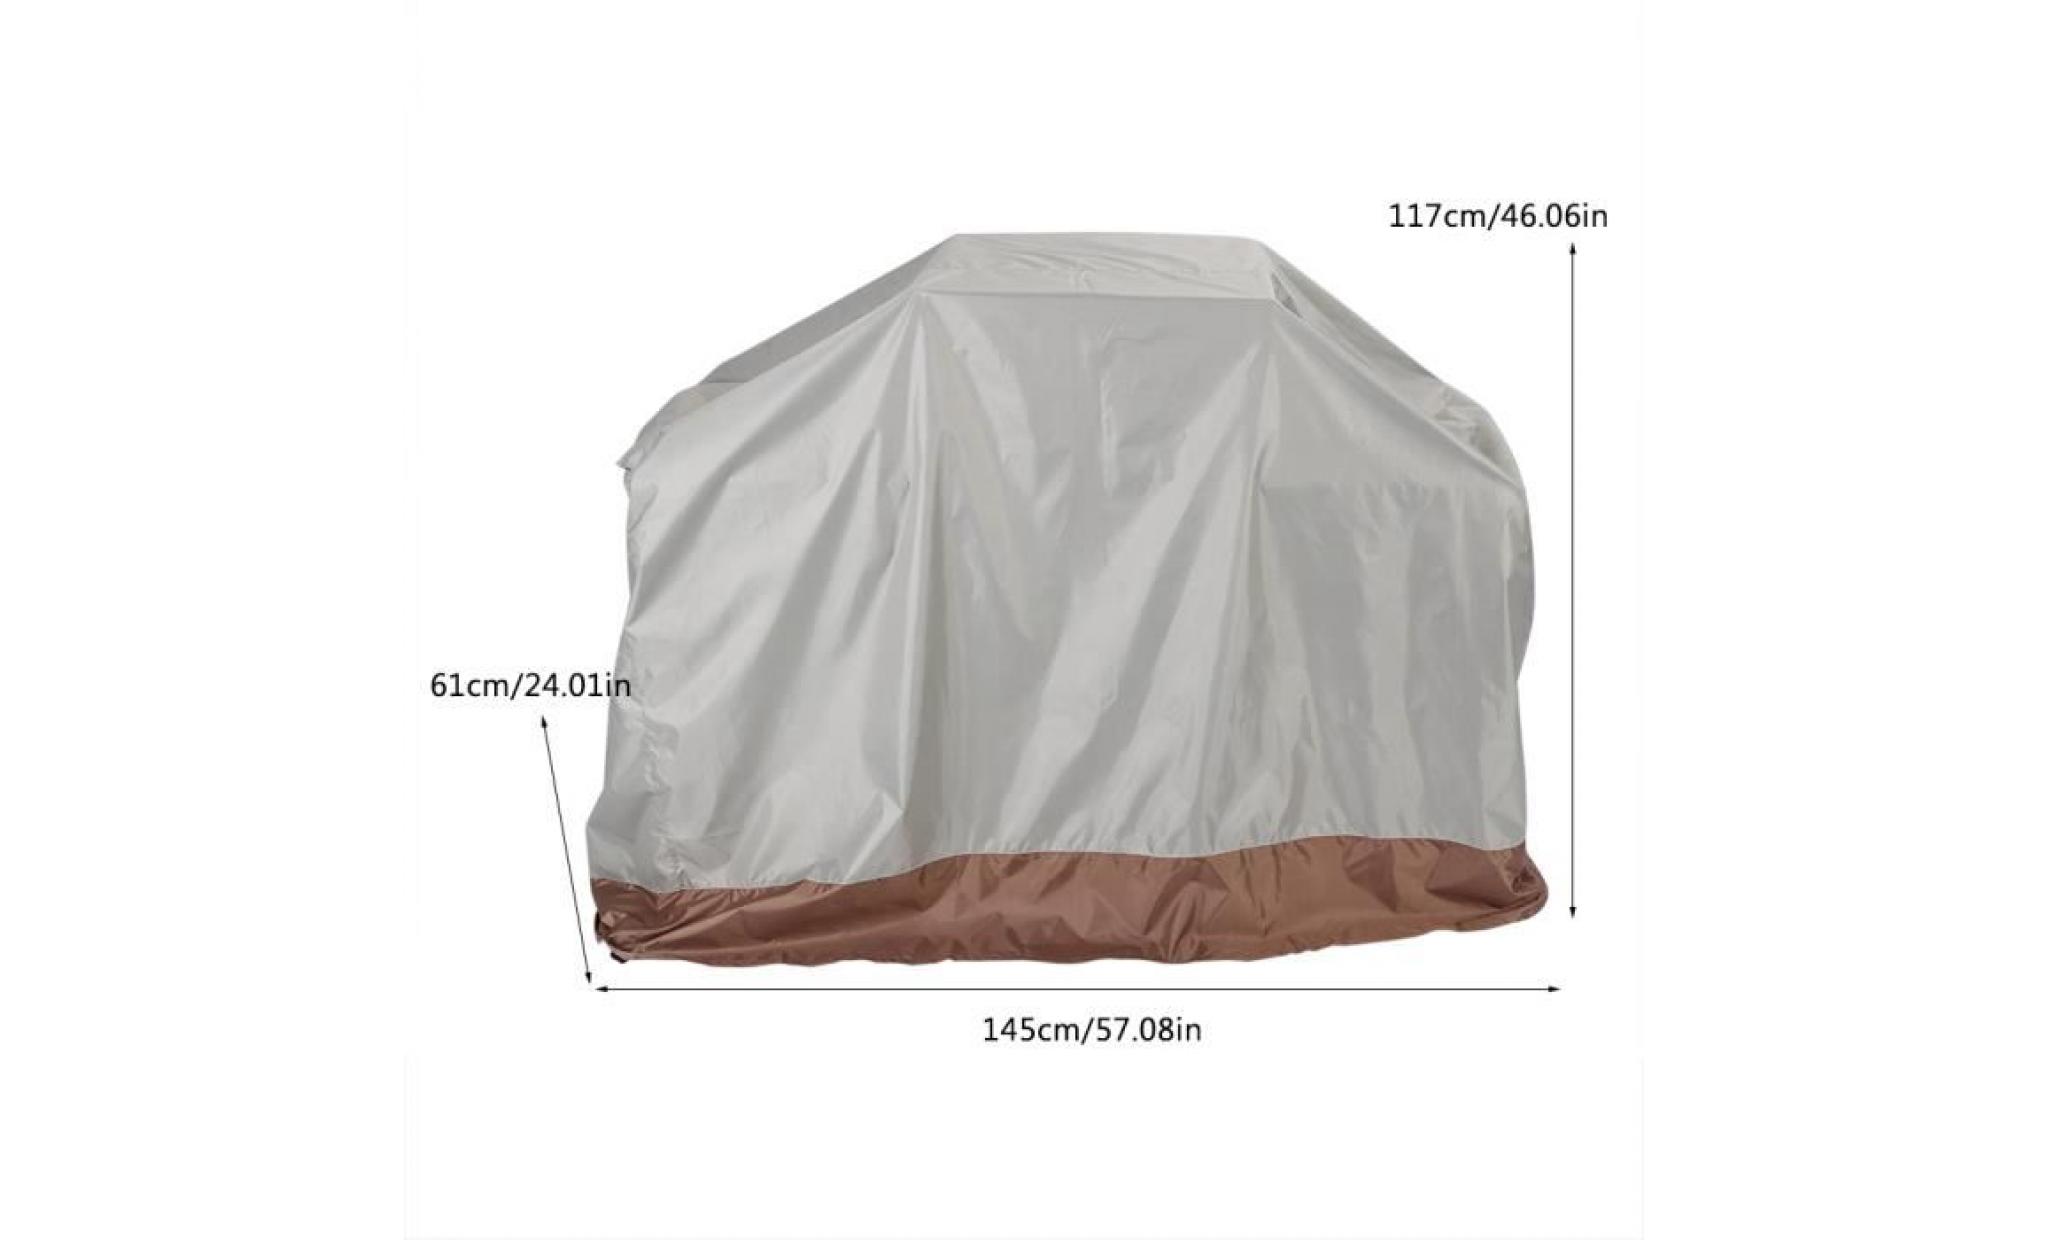 couverture de gril de barbecue en tissu d'oxford 210d extérieur imperméable 145 * 61 * 117cm rac pas cher